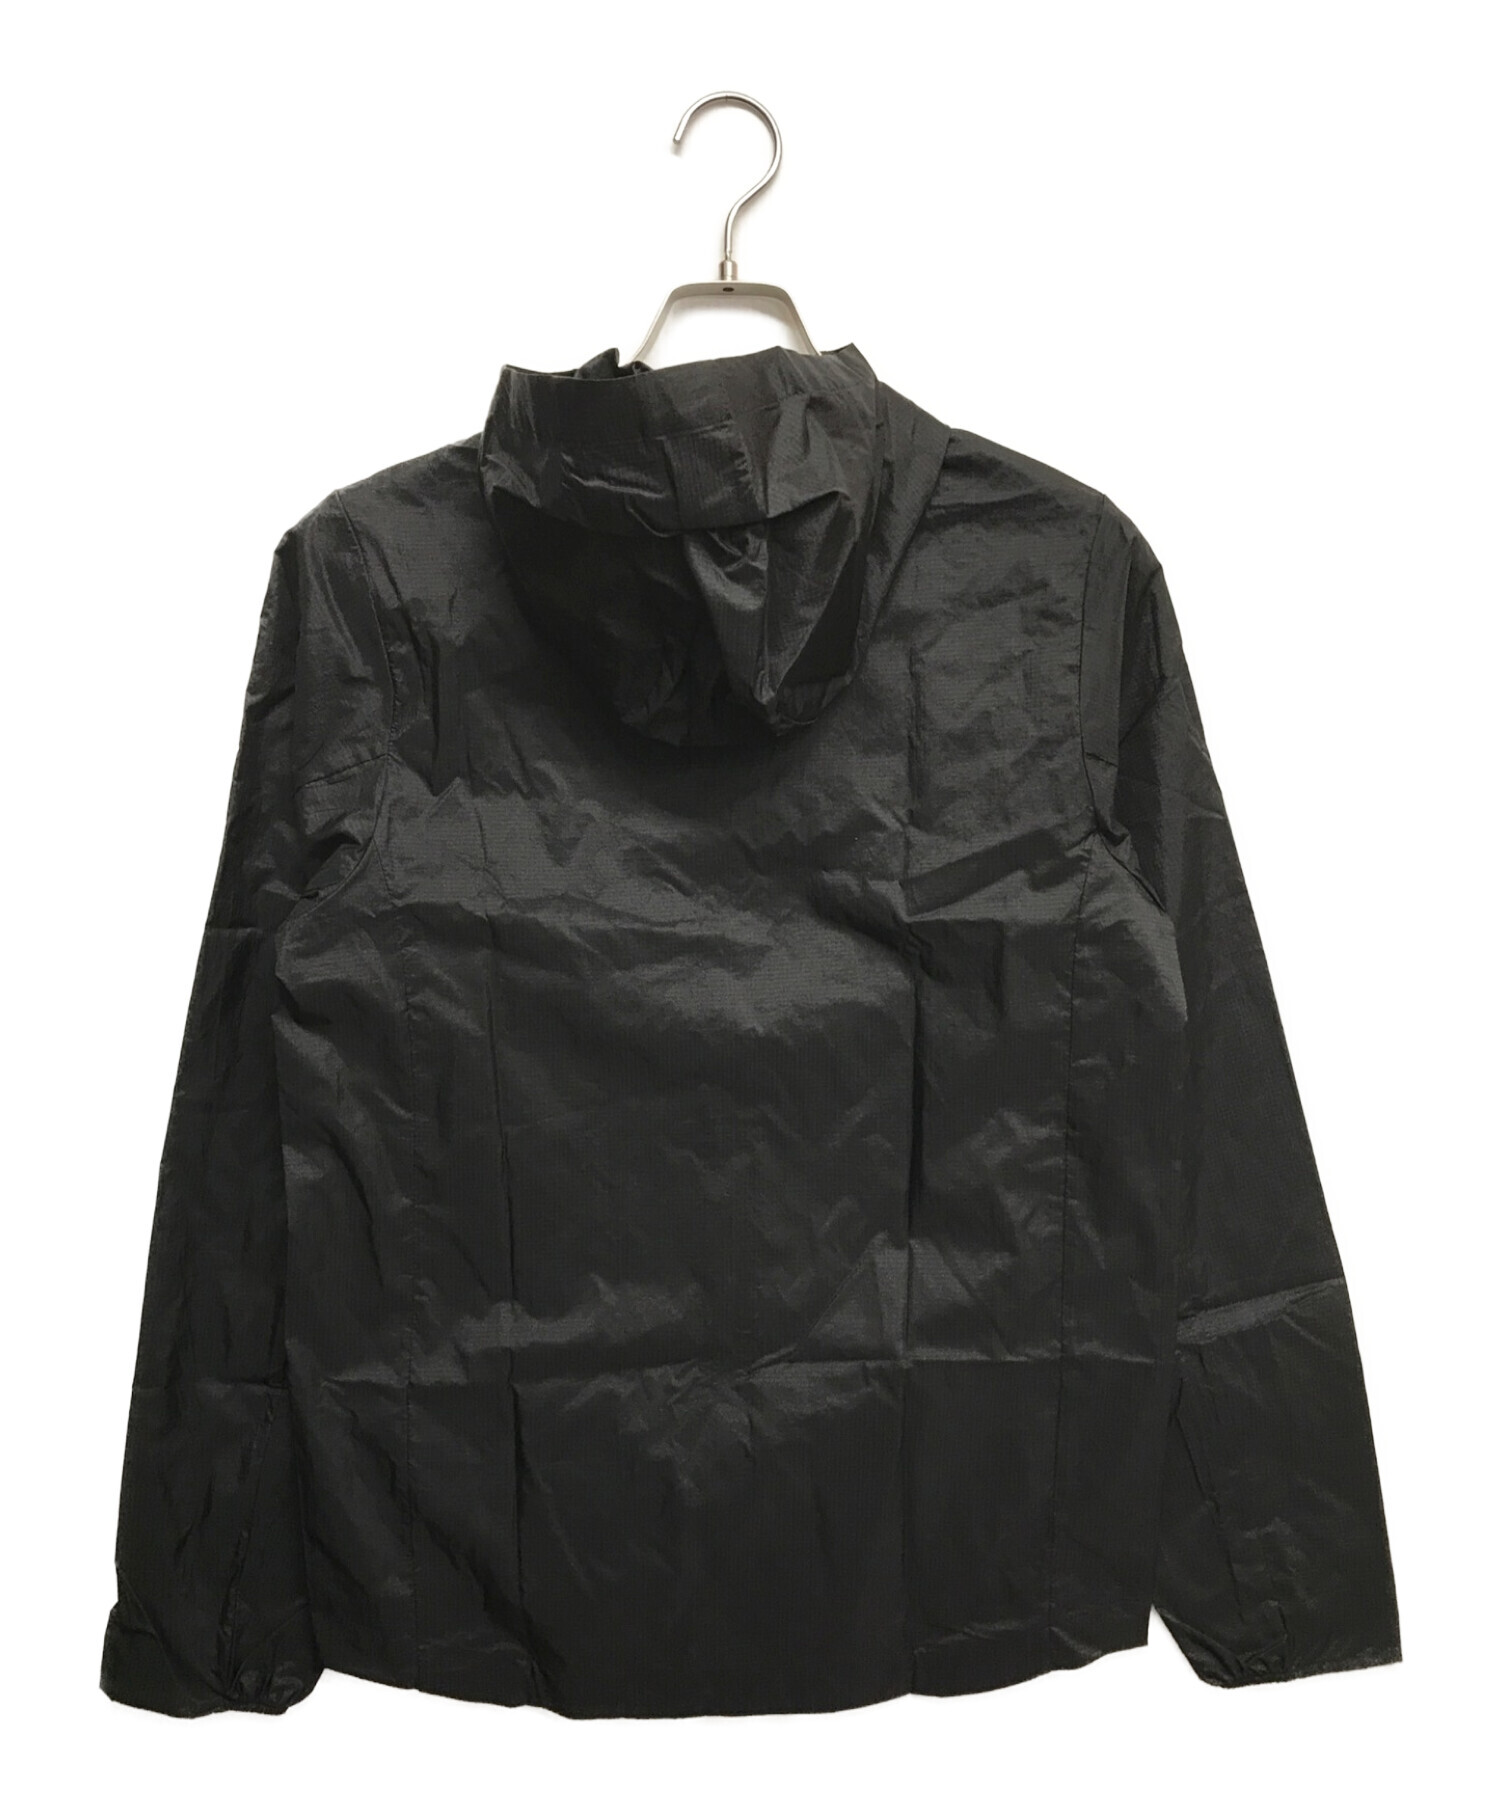 メンズパタゴニア フーディニジャケット ブラック XS - ナイロンジャケット